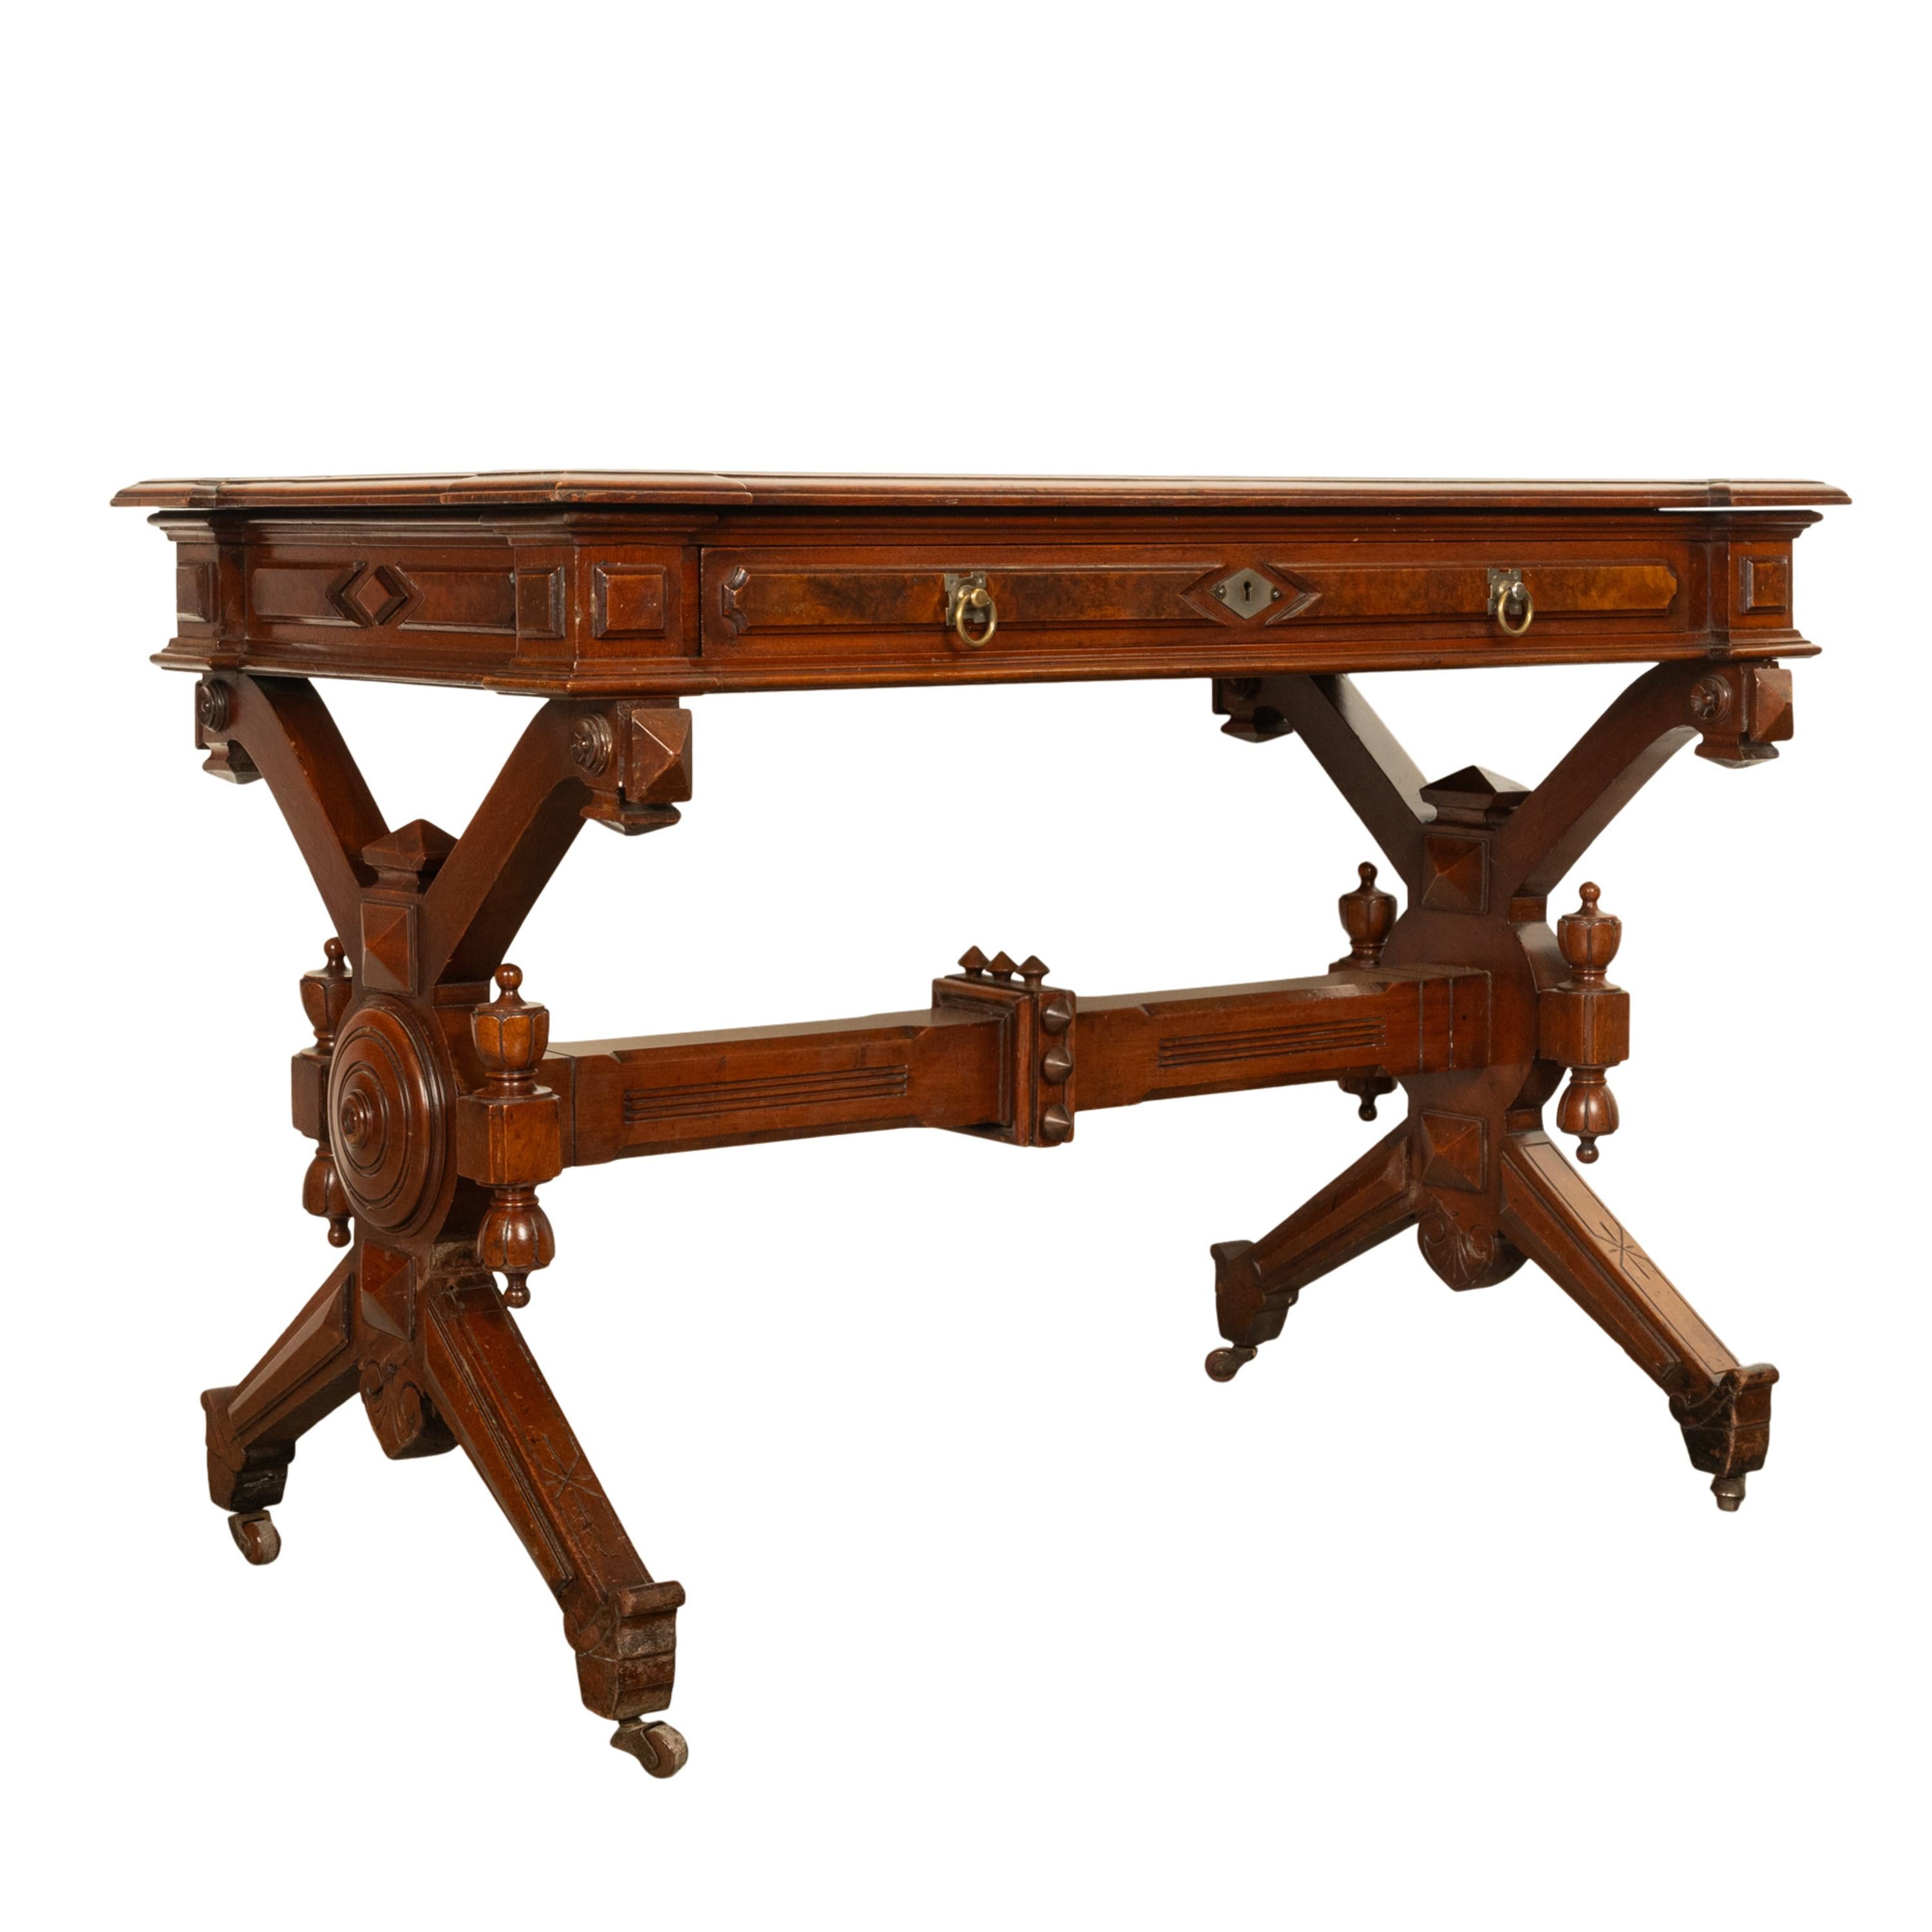 Ein guter antiker amerikanischer Renaissance-Revival-Schreibtisch aus Nussbaum, um 1875.
Der Tisch demonstriert den Einfluss der Ästhetischen Bewegung und von Designern wie Charles Eastlake. Die Tischplatte hat die ursprüngliche braune, mit